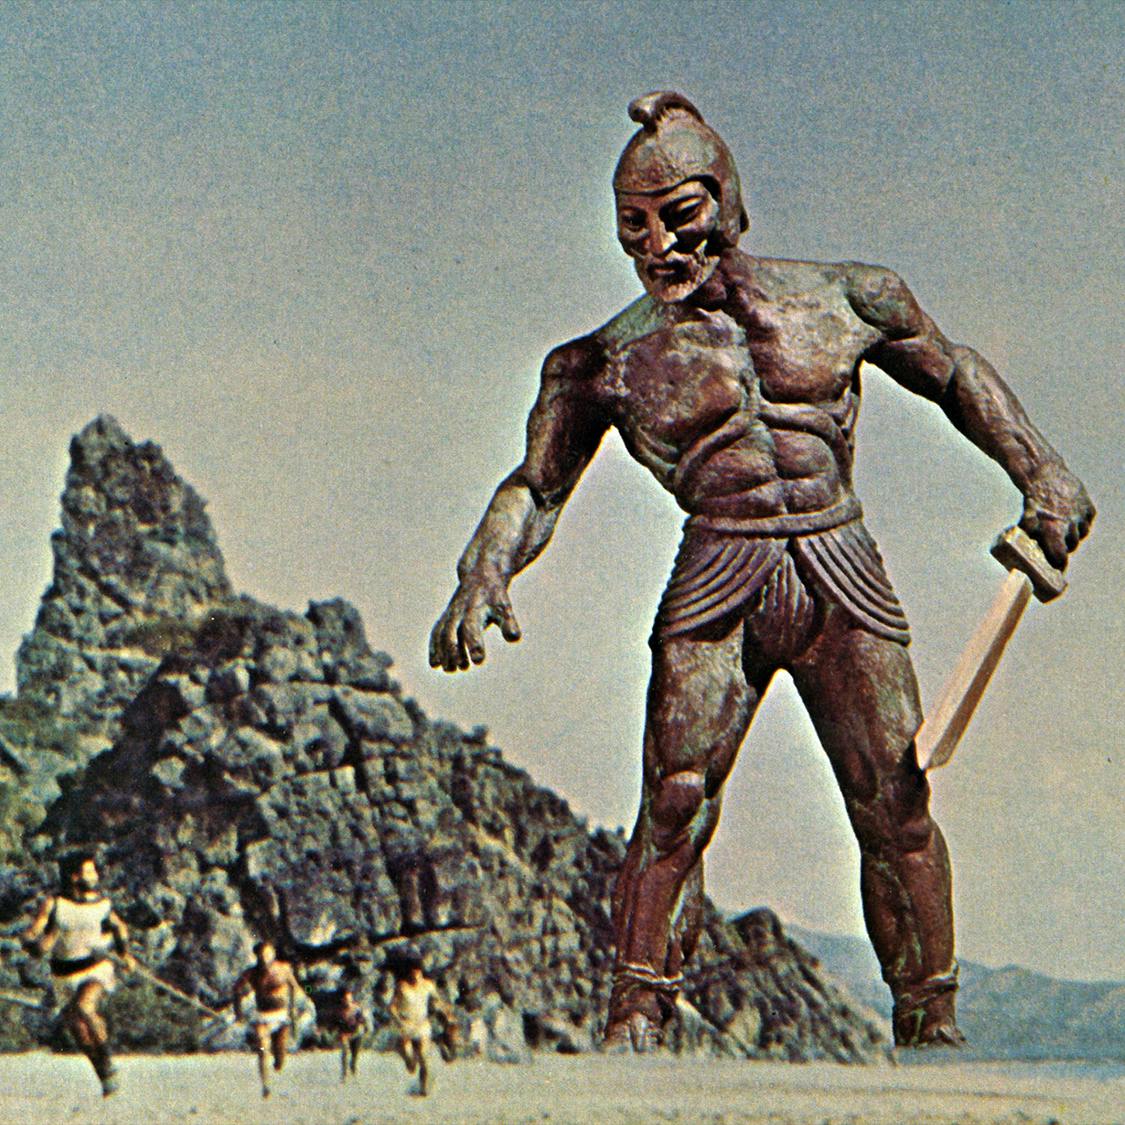 Jason & the Argonauts (1963)